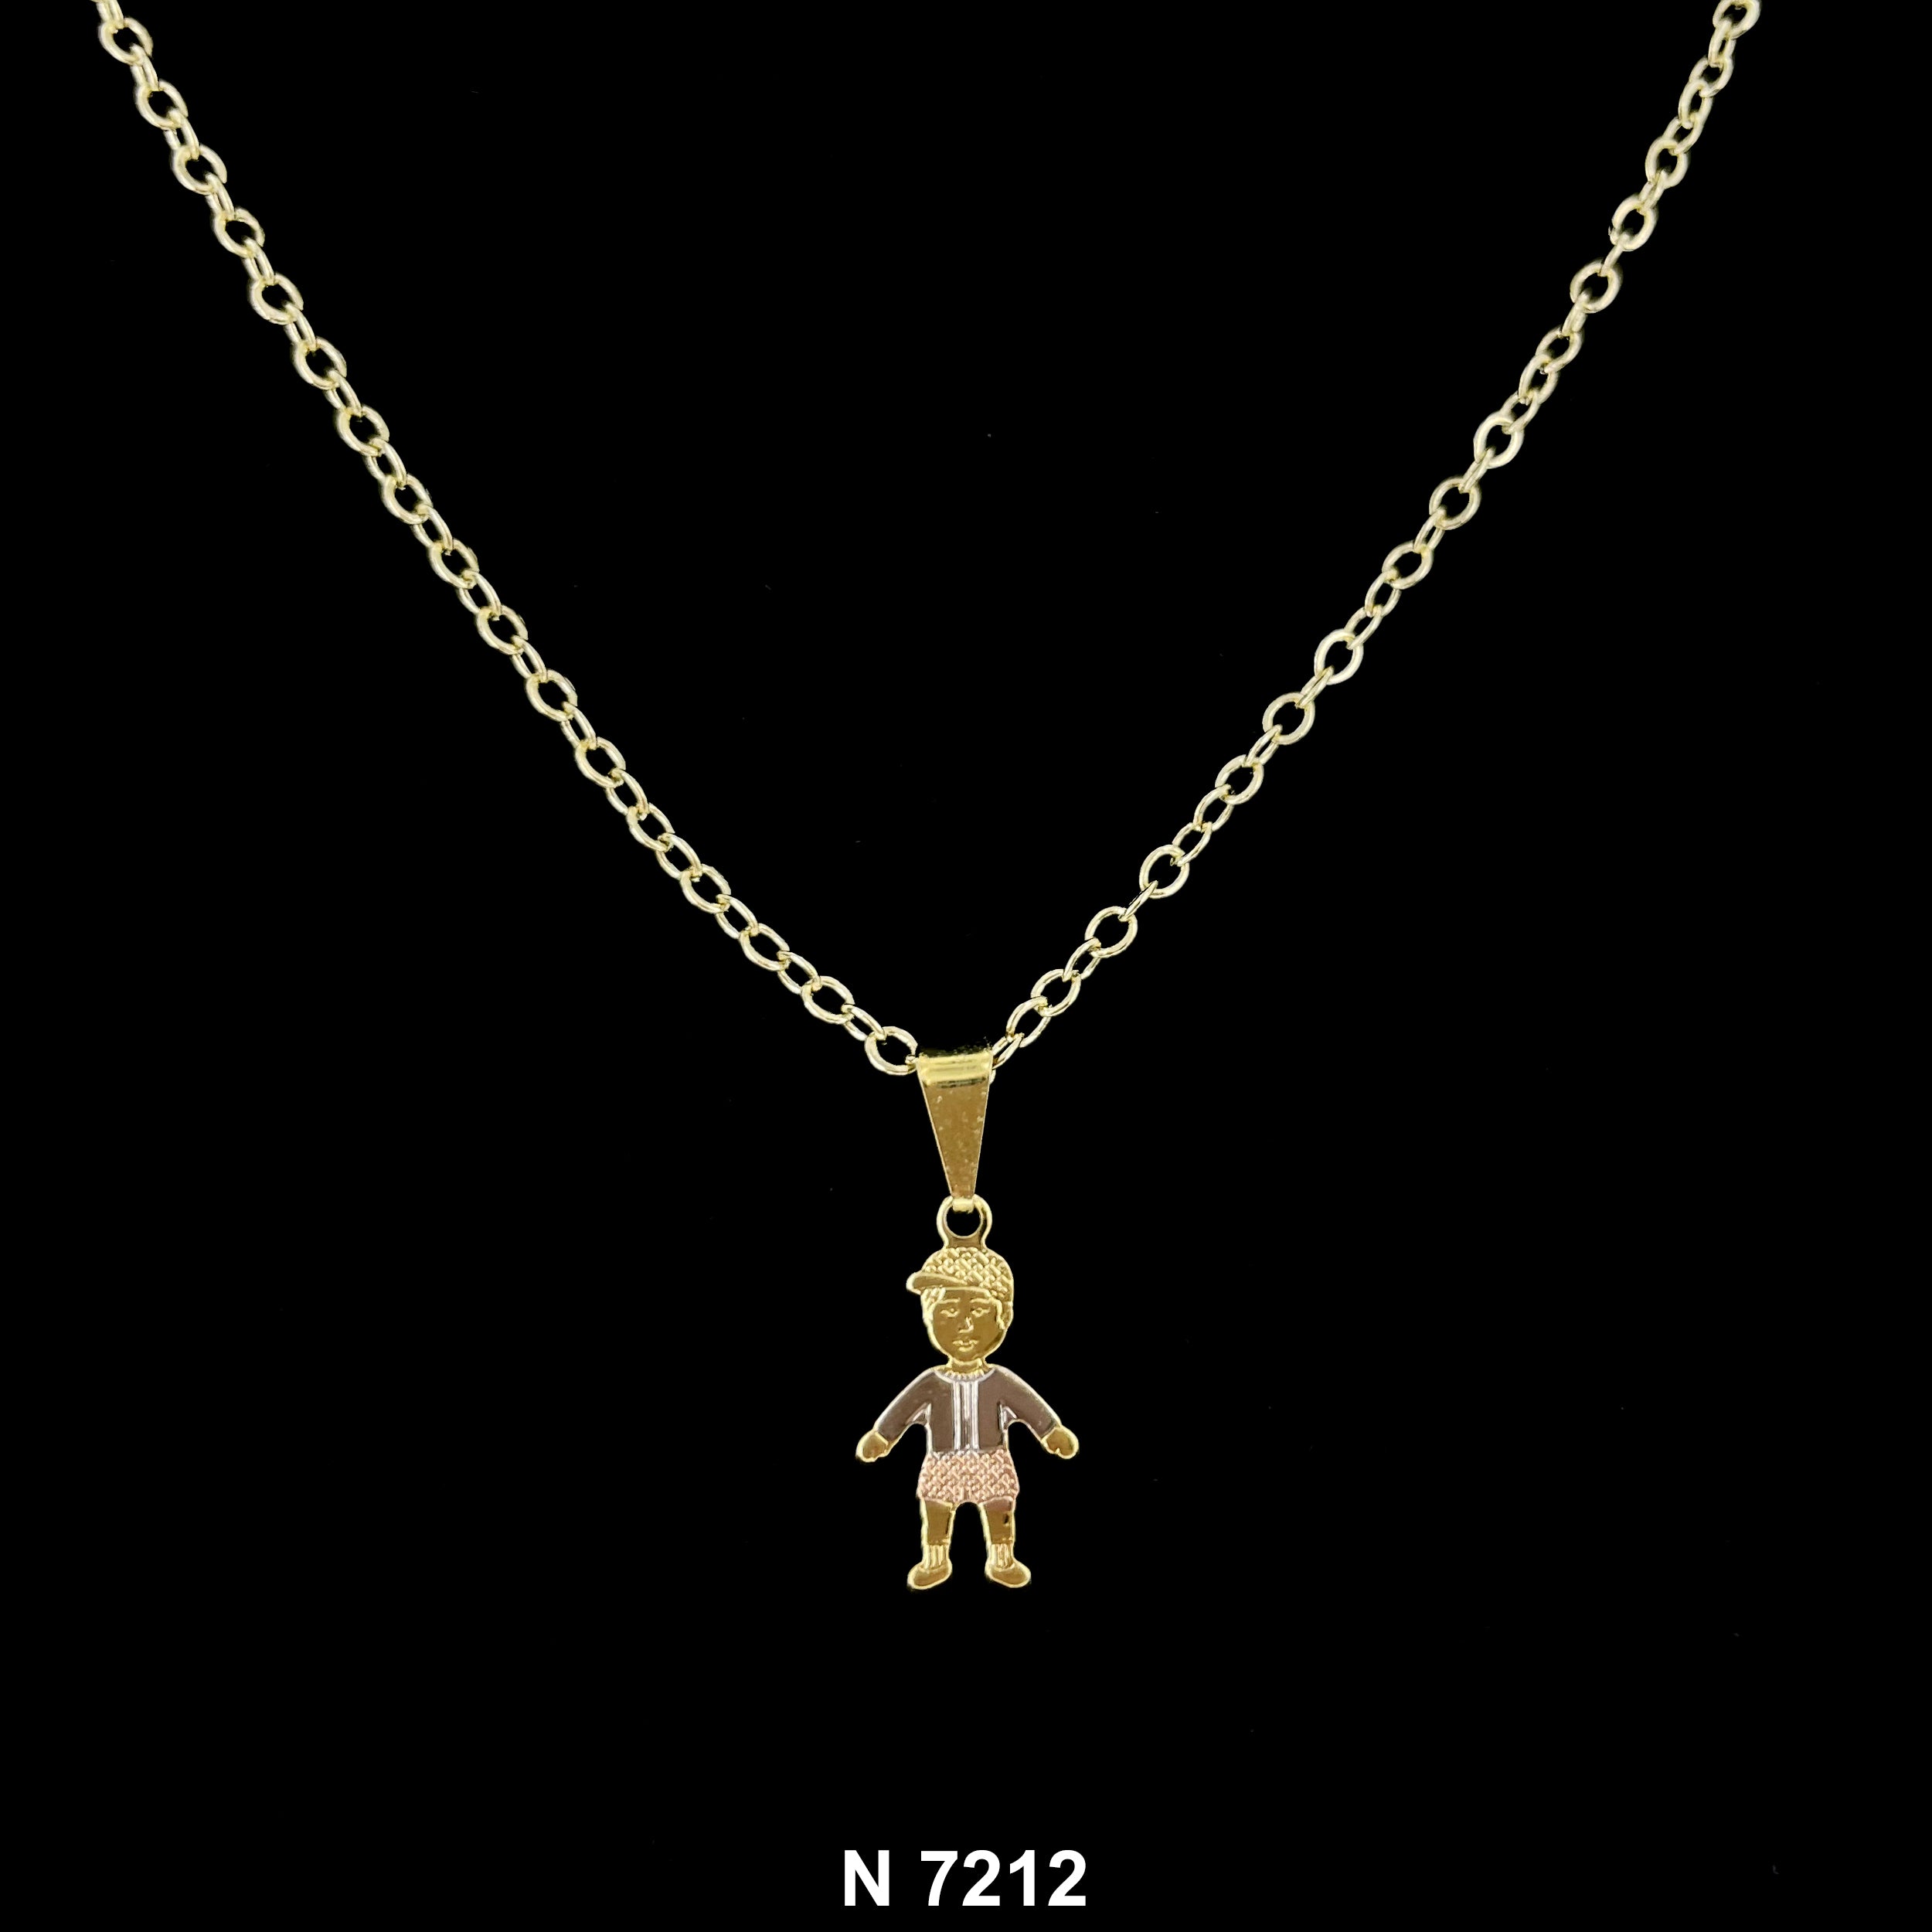 1 Boy Necklace N 7212